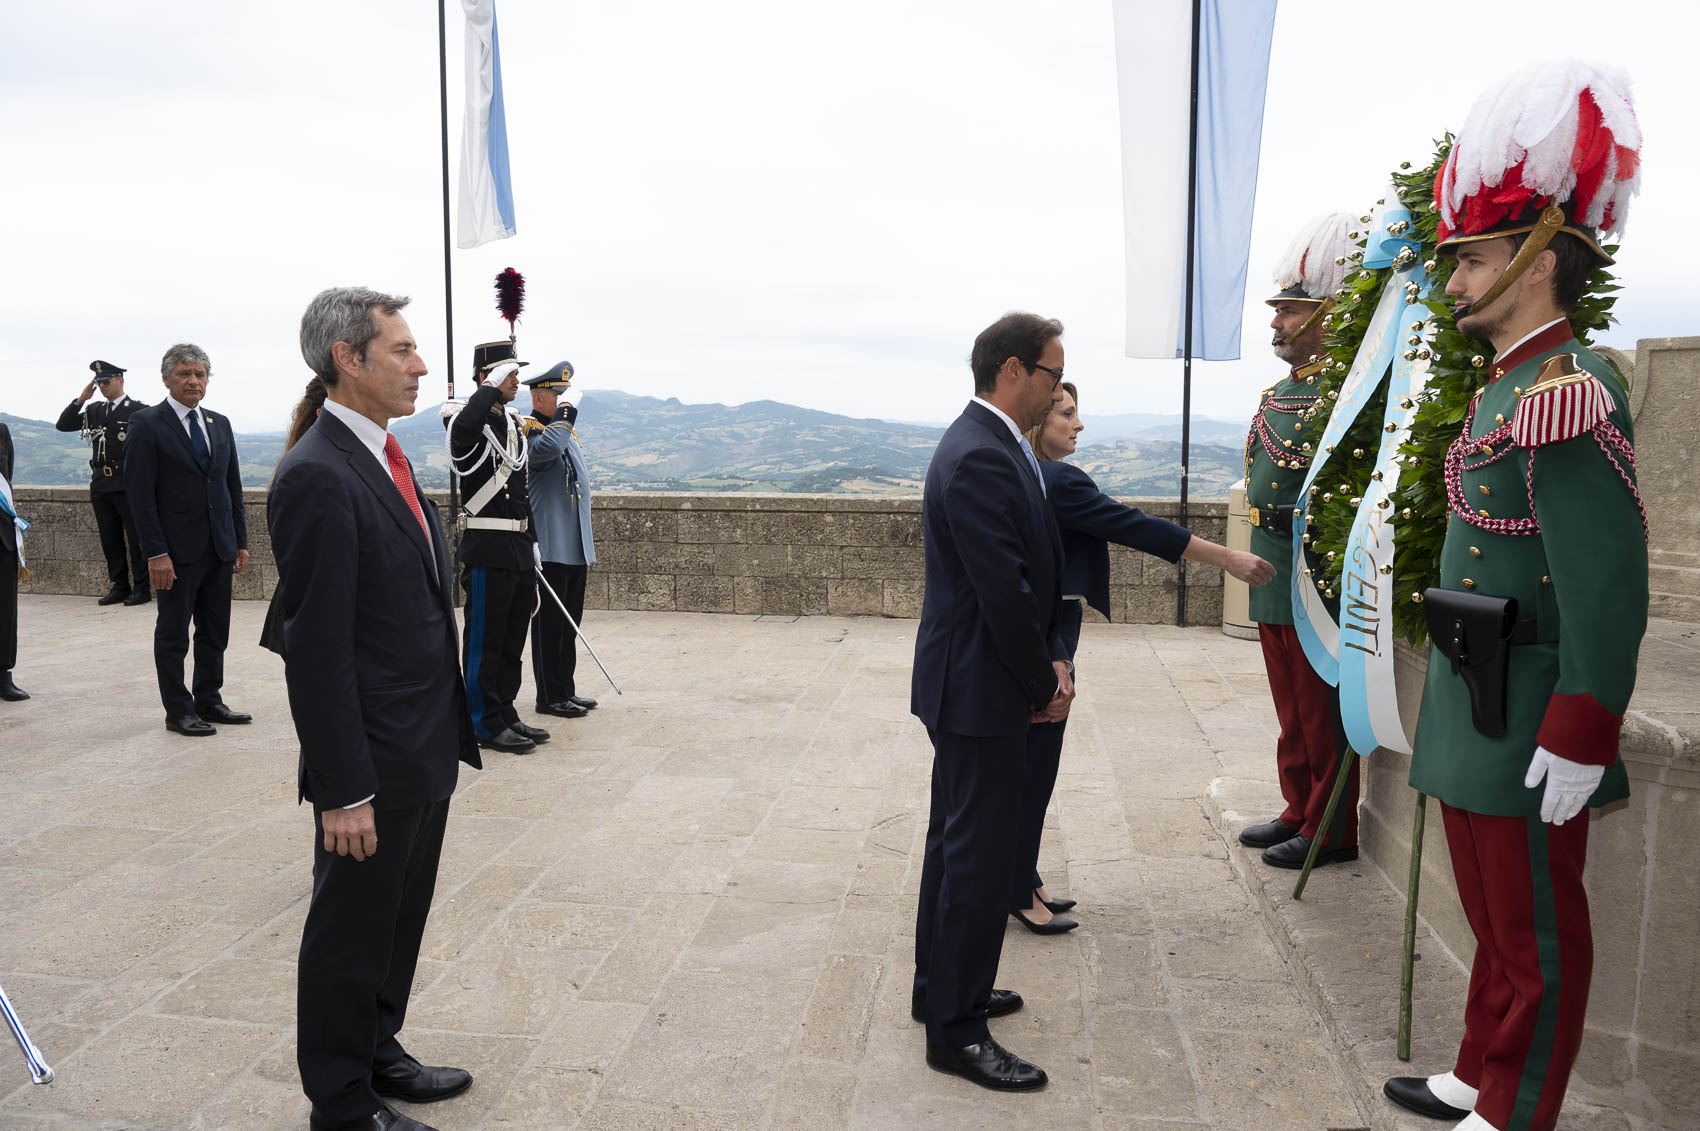 San Marino. In piazza della Libertà le celebrazioni del 28 luglio: “Festeggiamo valori che sono da sempre nelle nostre radici”